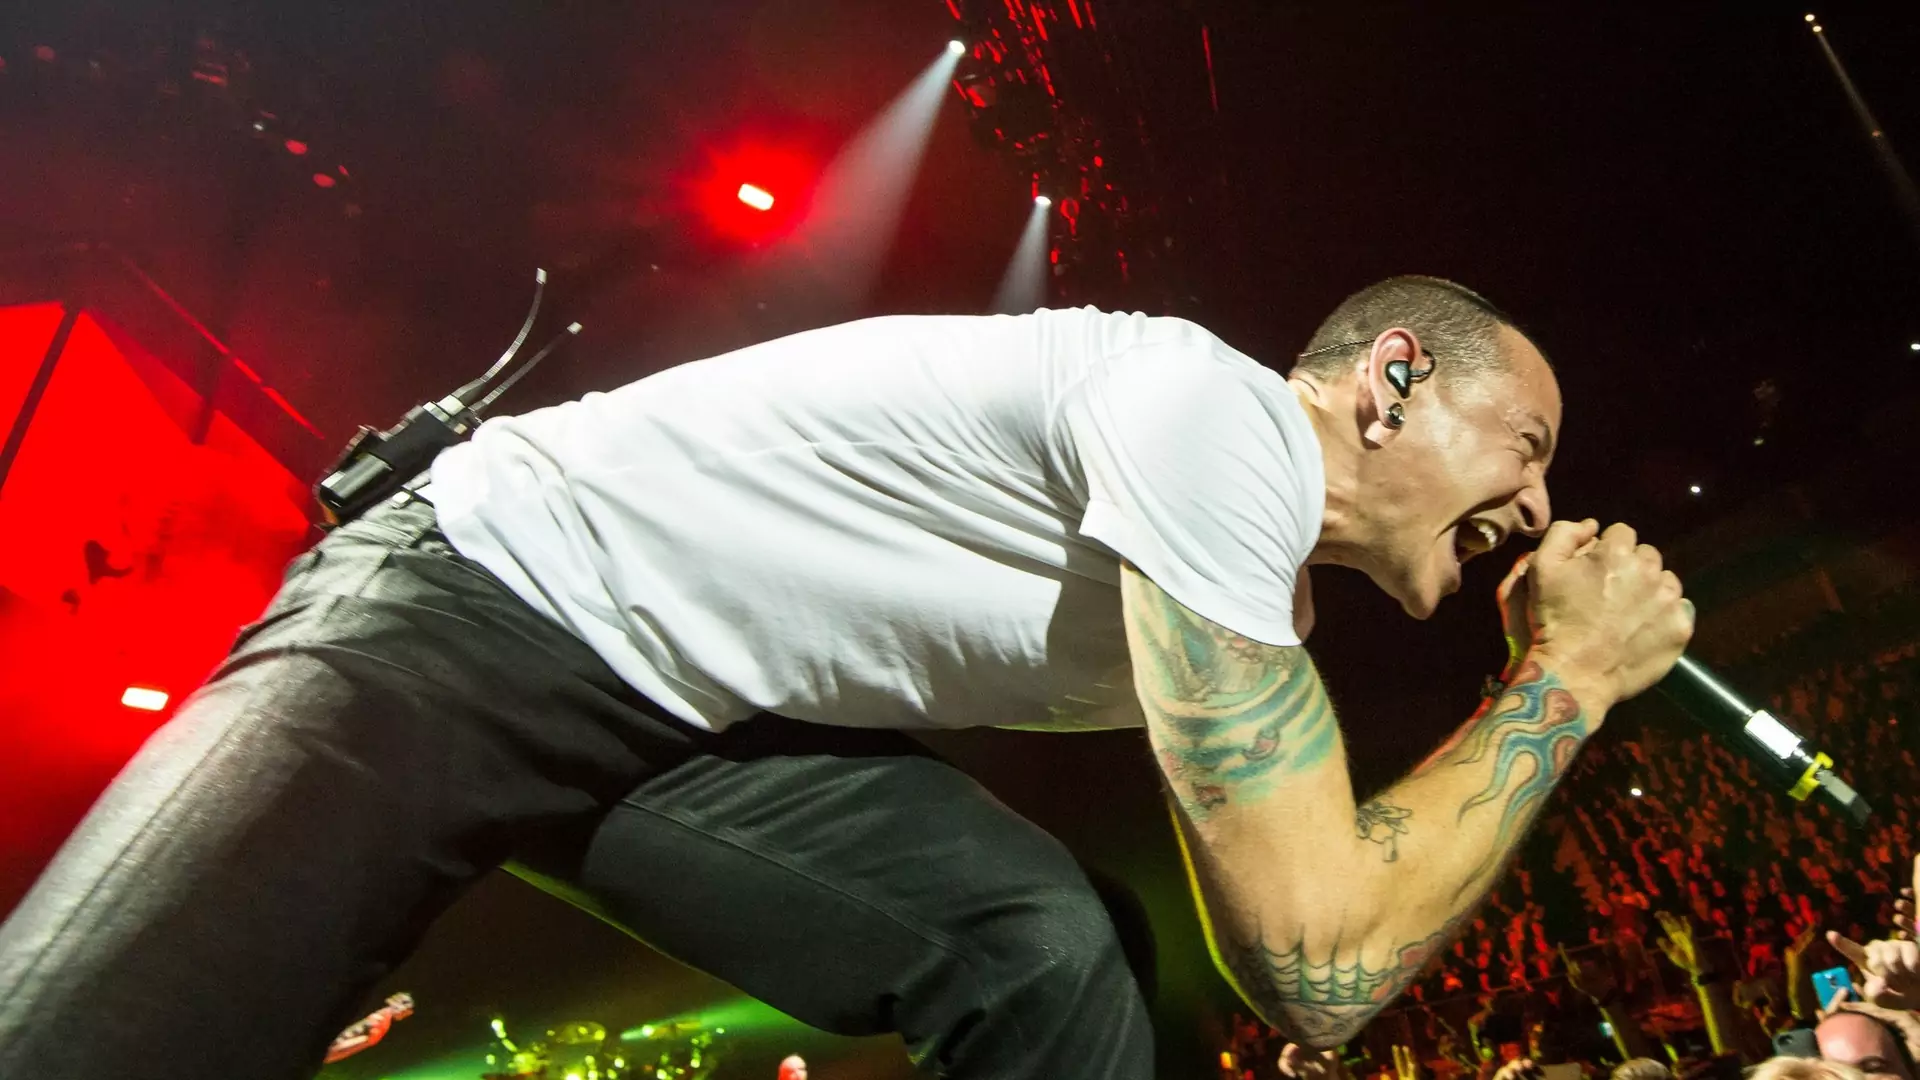 Przemoc, narkotyki i molestowanie. Mało kto zna prawdziwą historię życia wokalisty Linkin Park